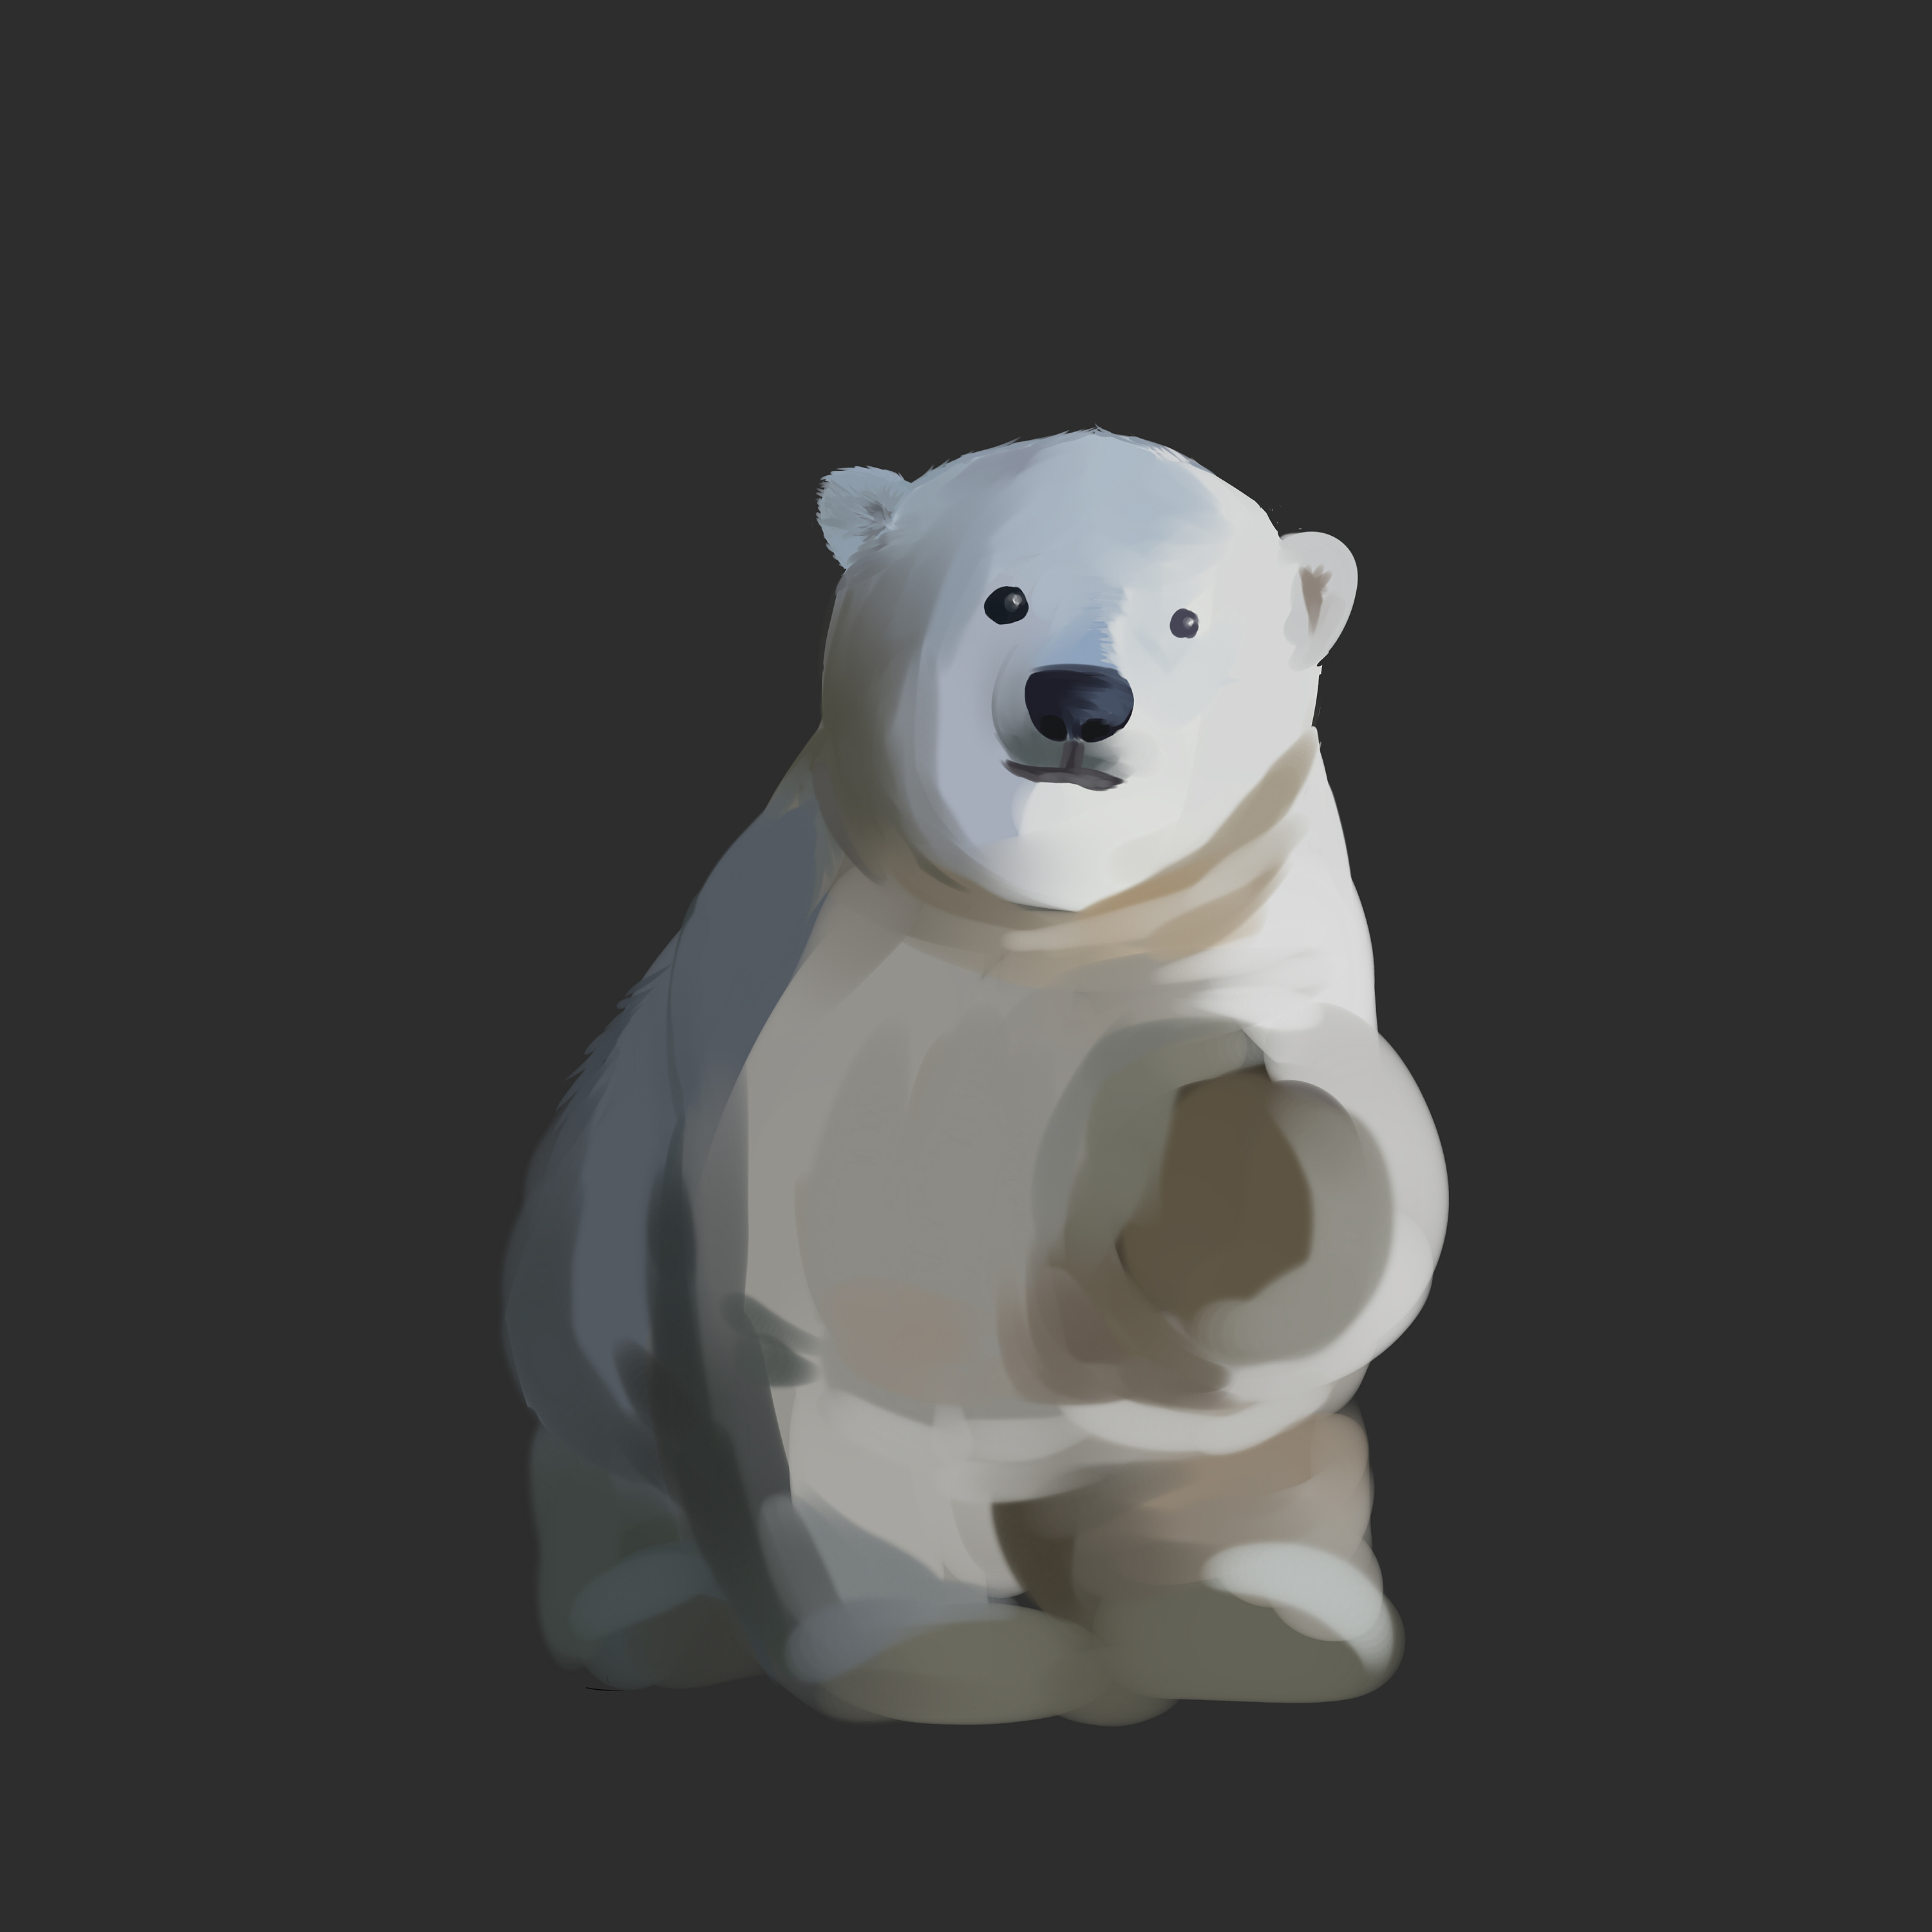 北极熊头像可爱 微信图片